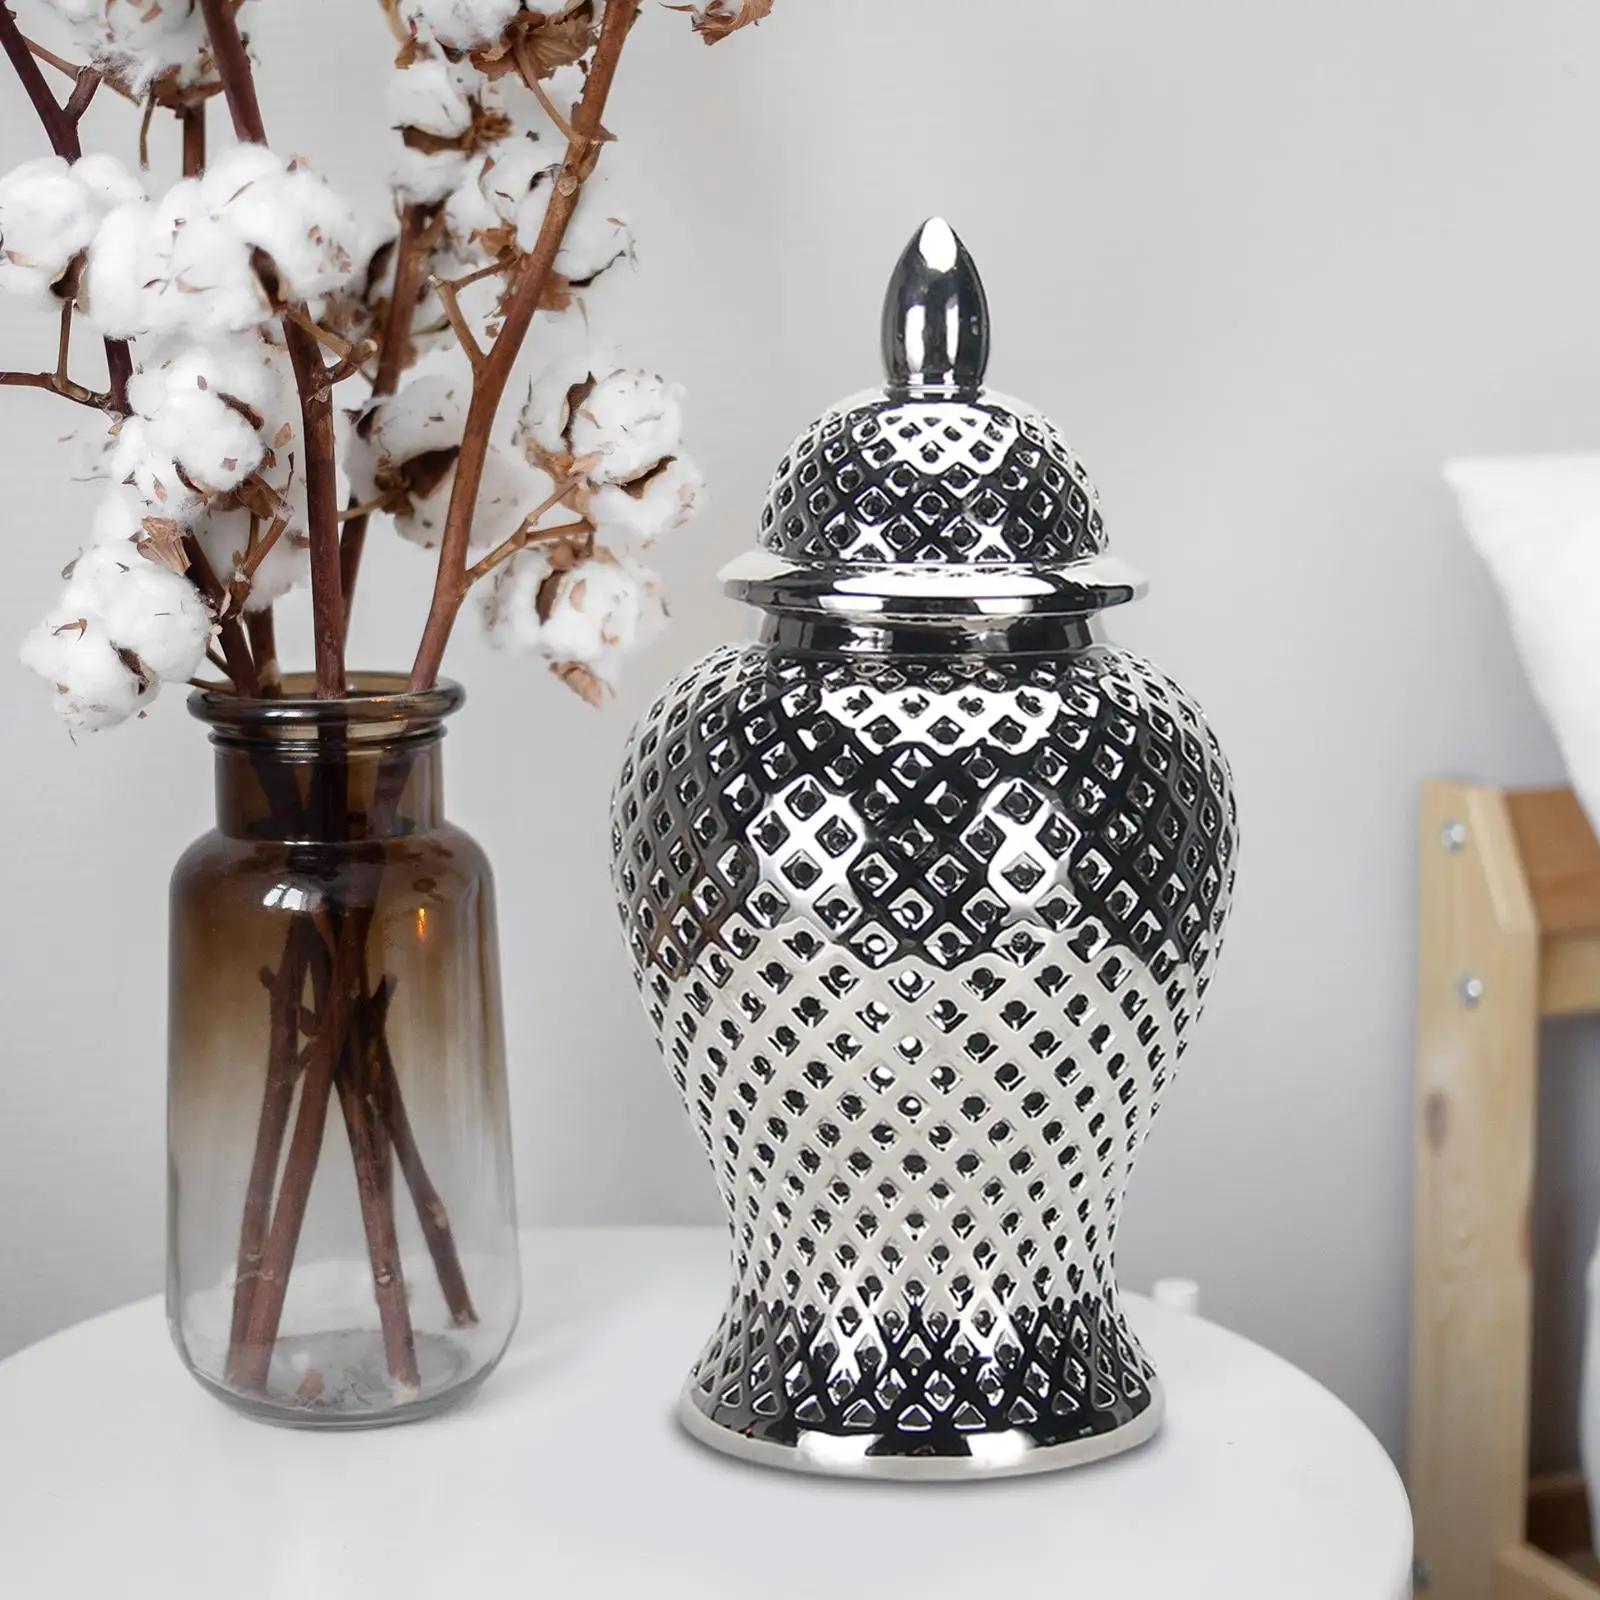 Ceramic Ginger Jar Elegant Decorative Vase Storage Decorative Vase for Kitchen Decoration Living Room Bedroom Desktop